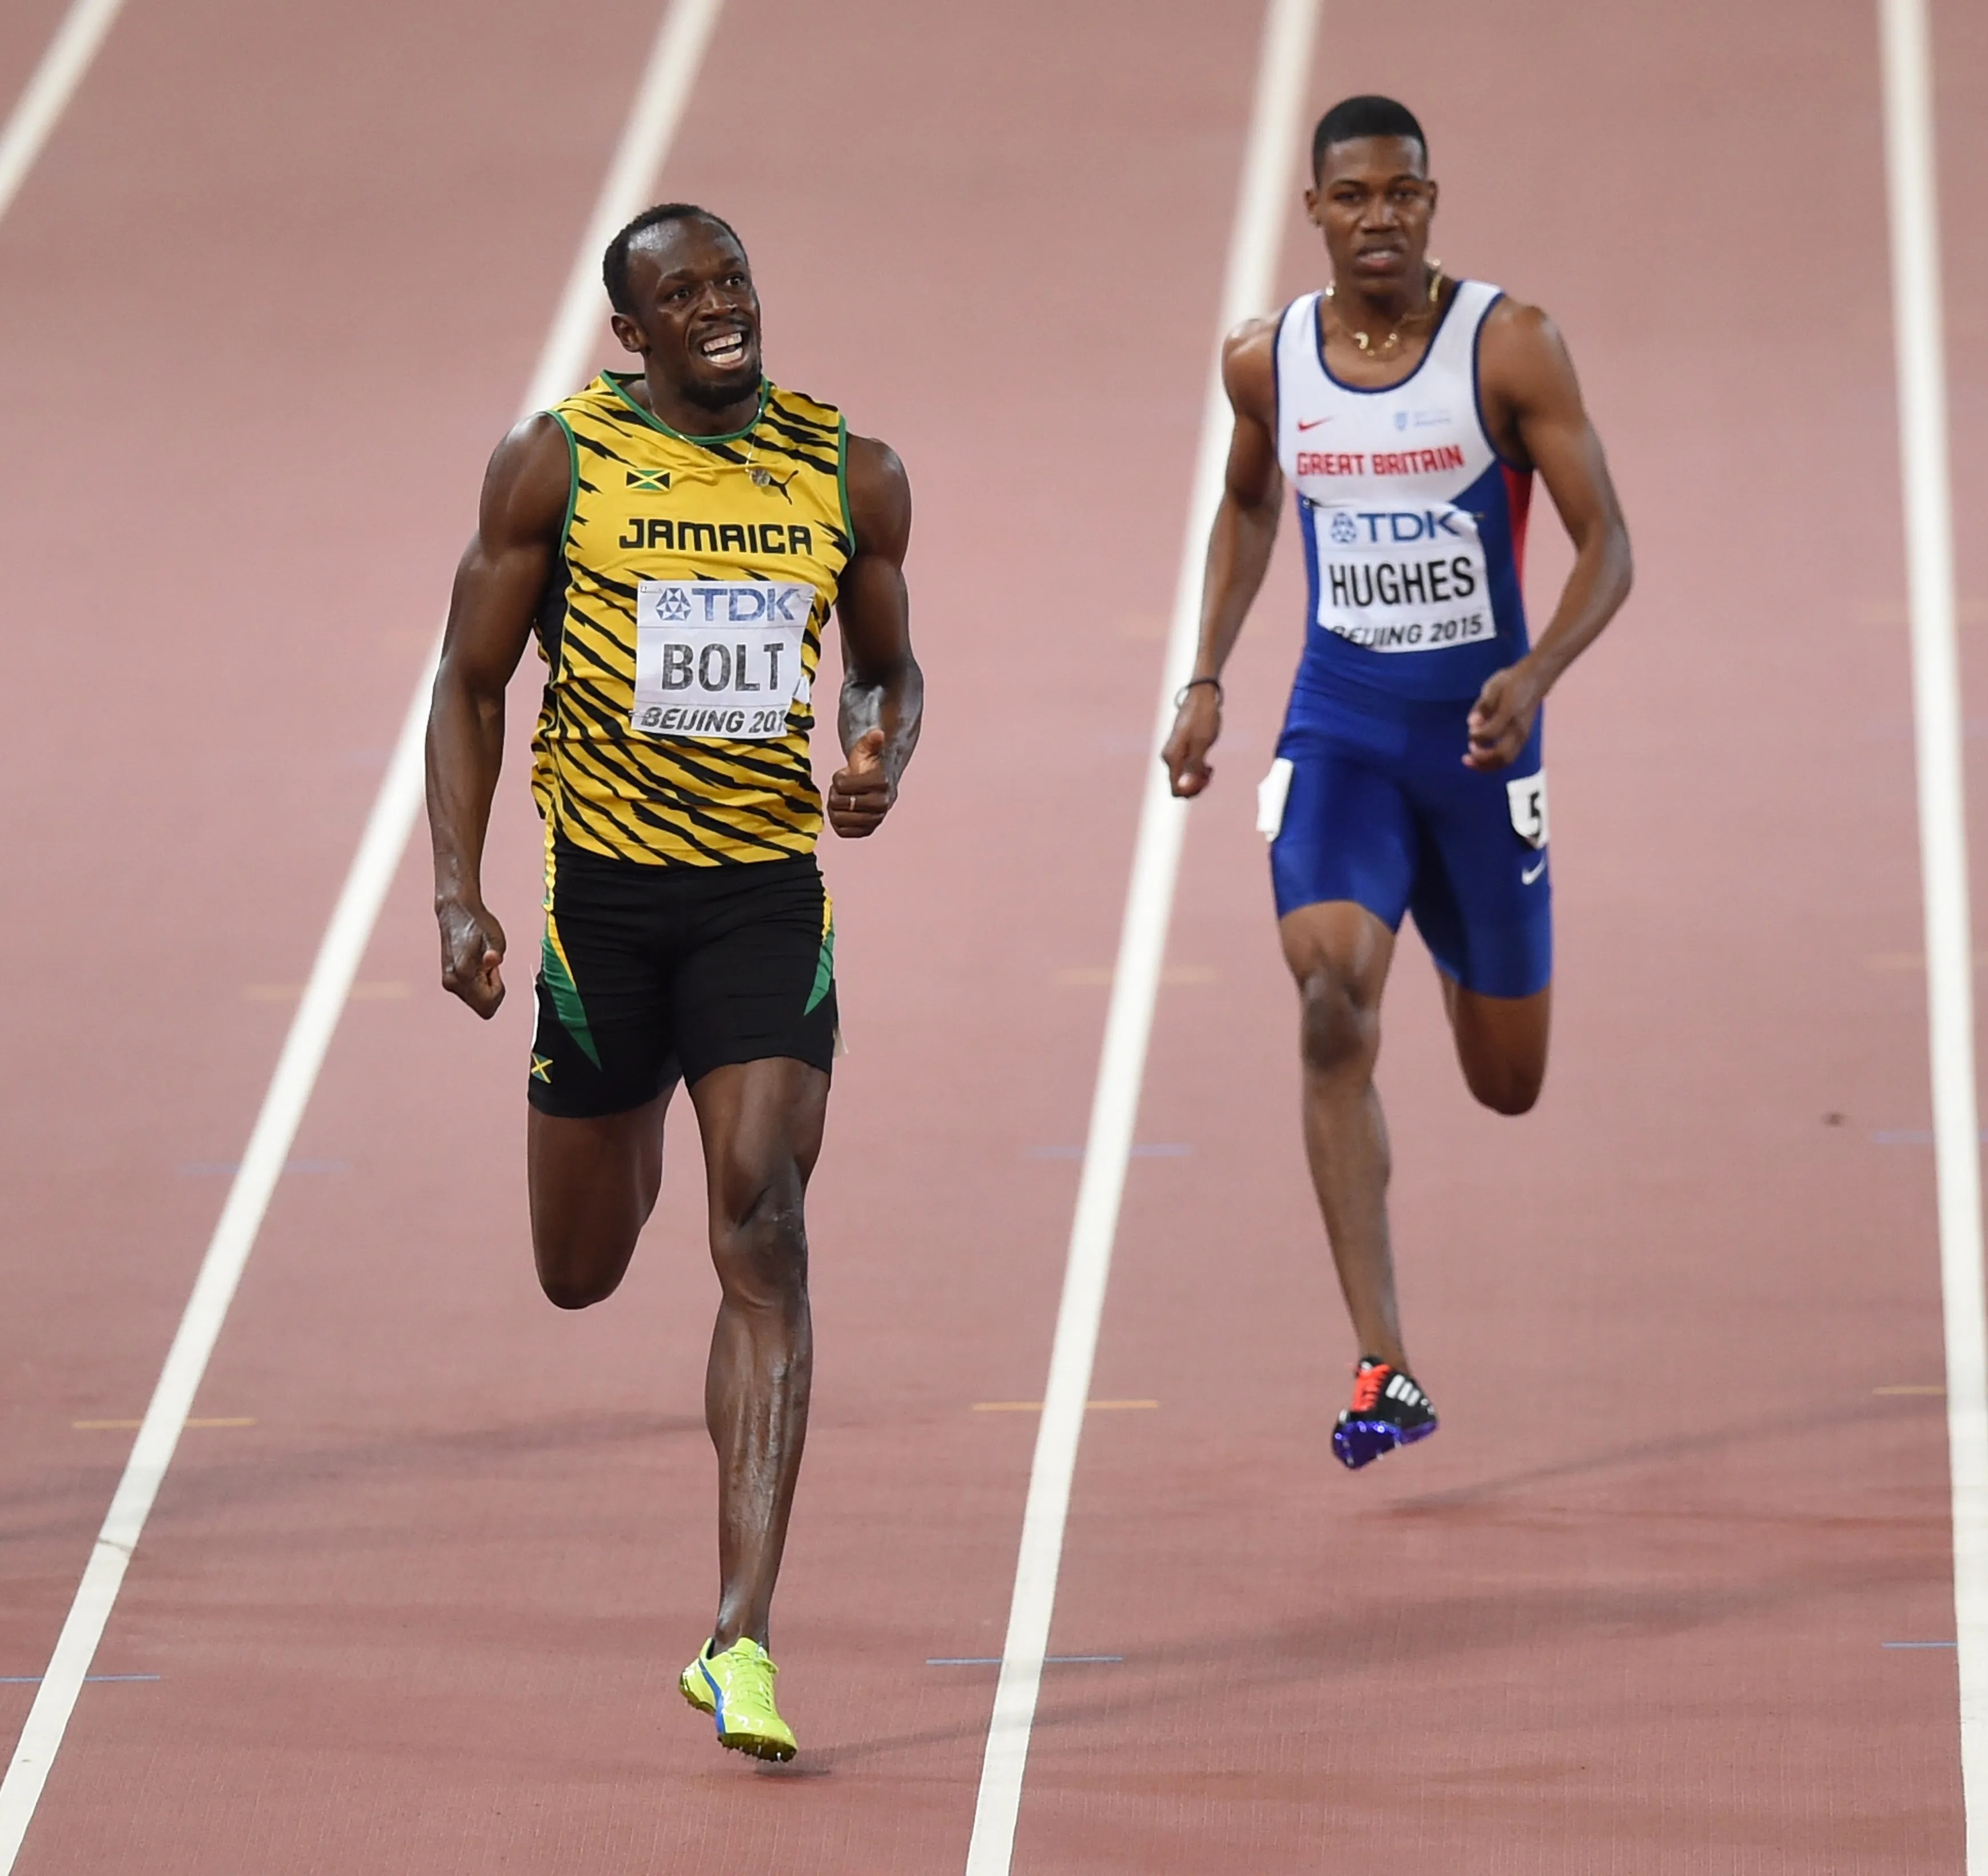 Die jamaikanische Legende Usain Bolt ist Stammgast im Trainingslager von Großbritanniens schnellstem Mann aller Zeiten, Zharnel Hughes